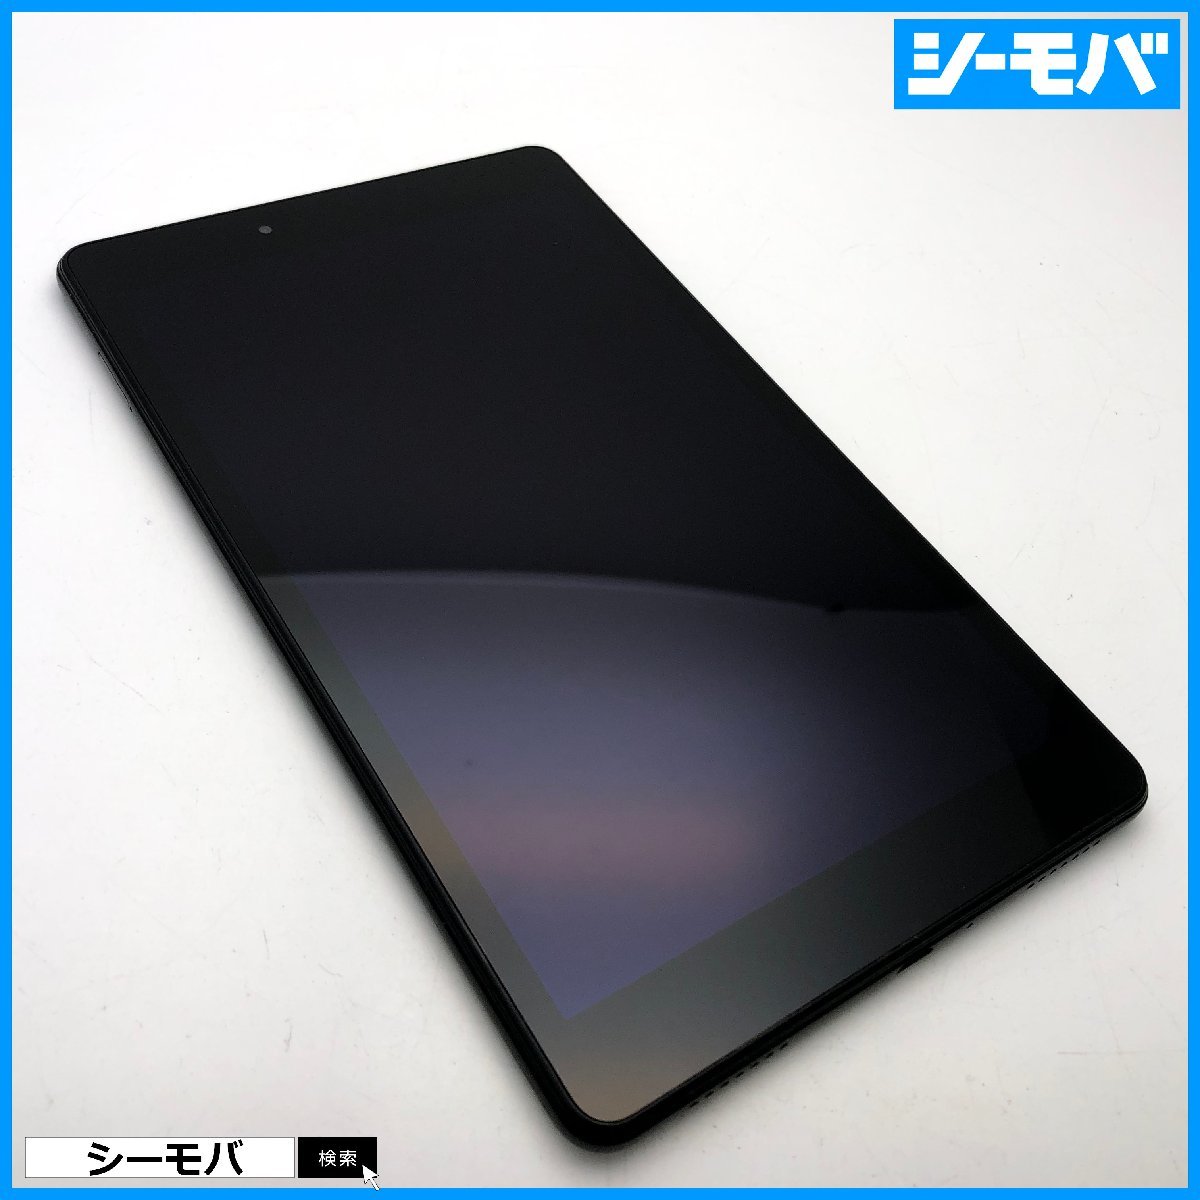 タブレット サムスン Galaxy Tab A 8.0 SM-T290 Wi-Fi 32GB ブラック 中古 8インチ android アンドロイド RUUN13686_画像1